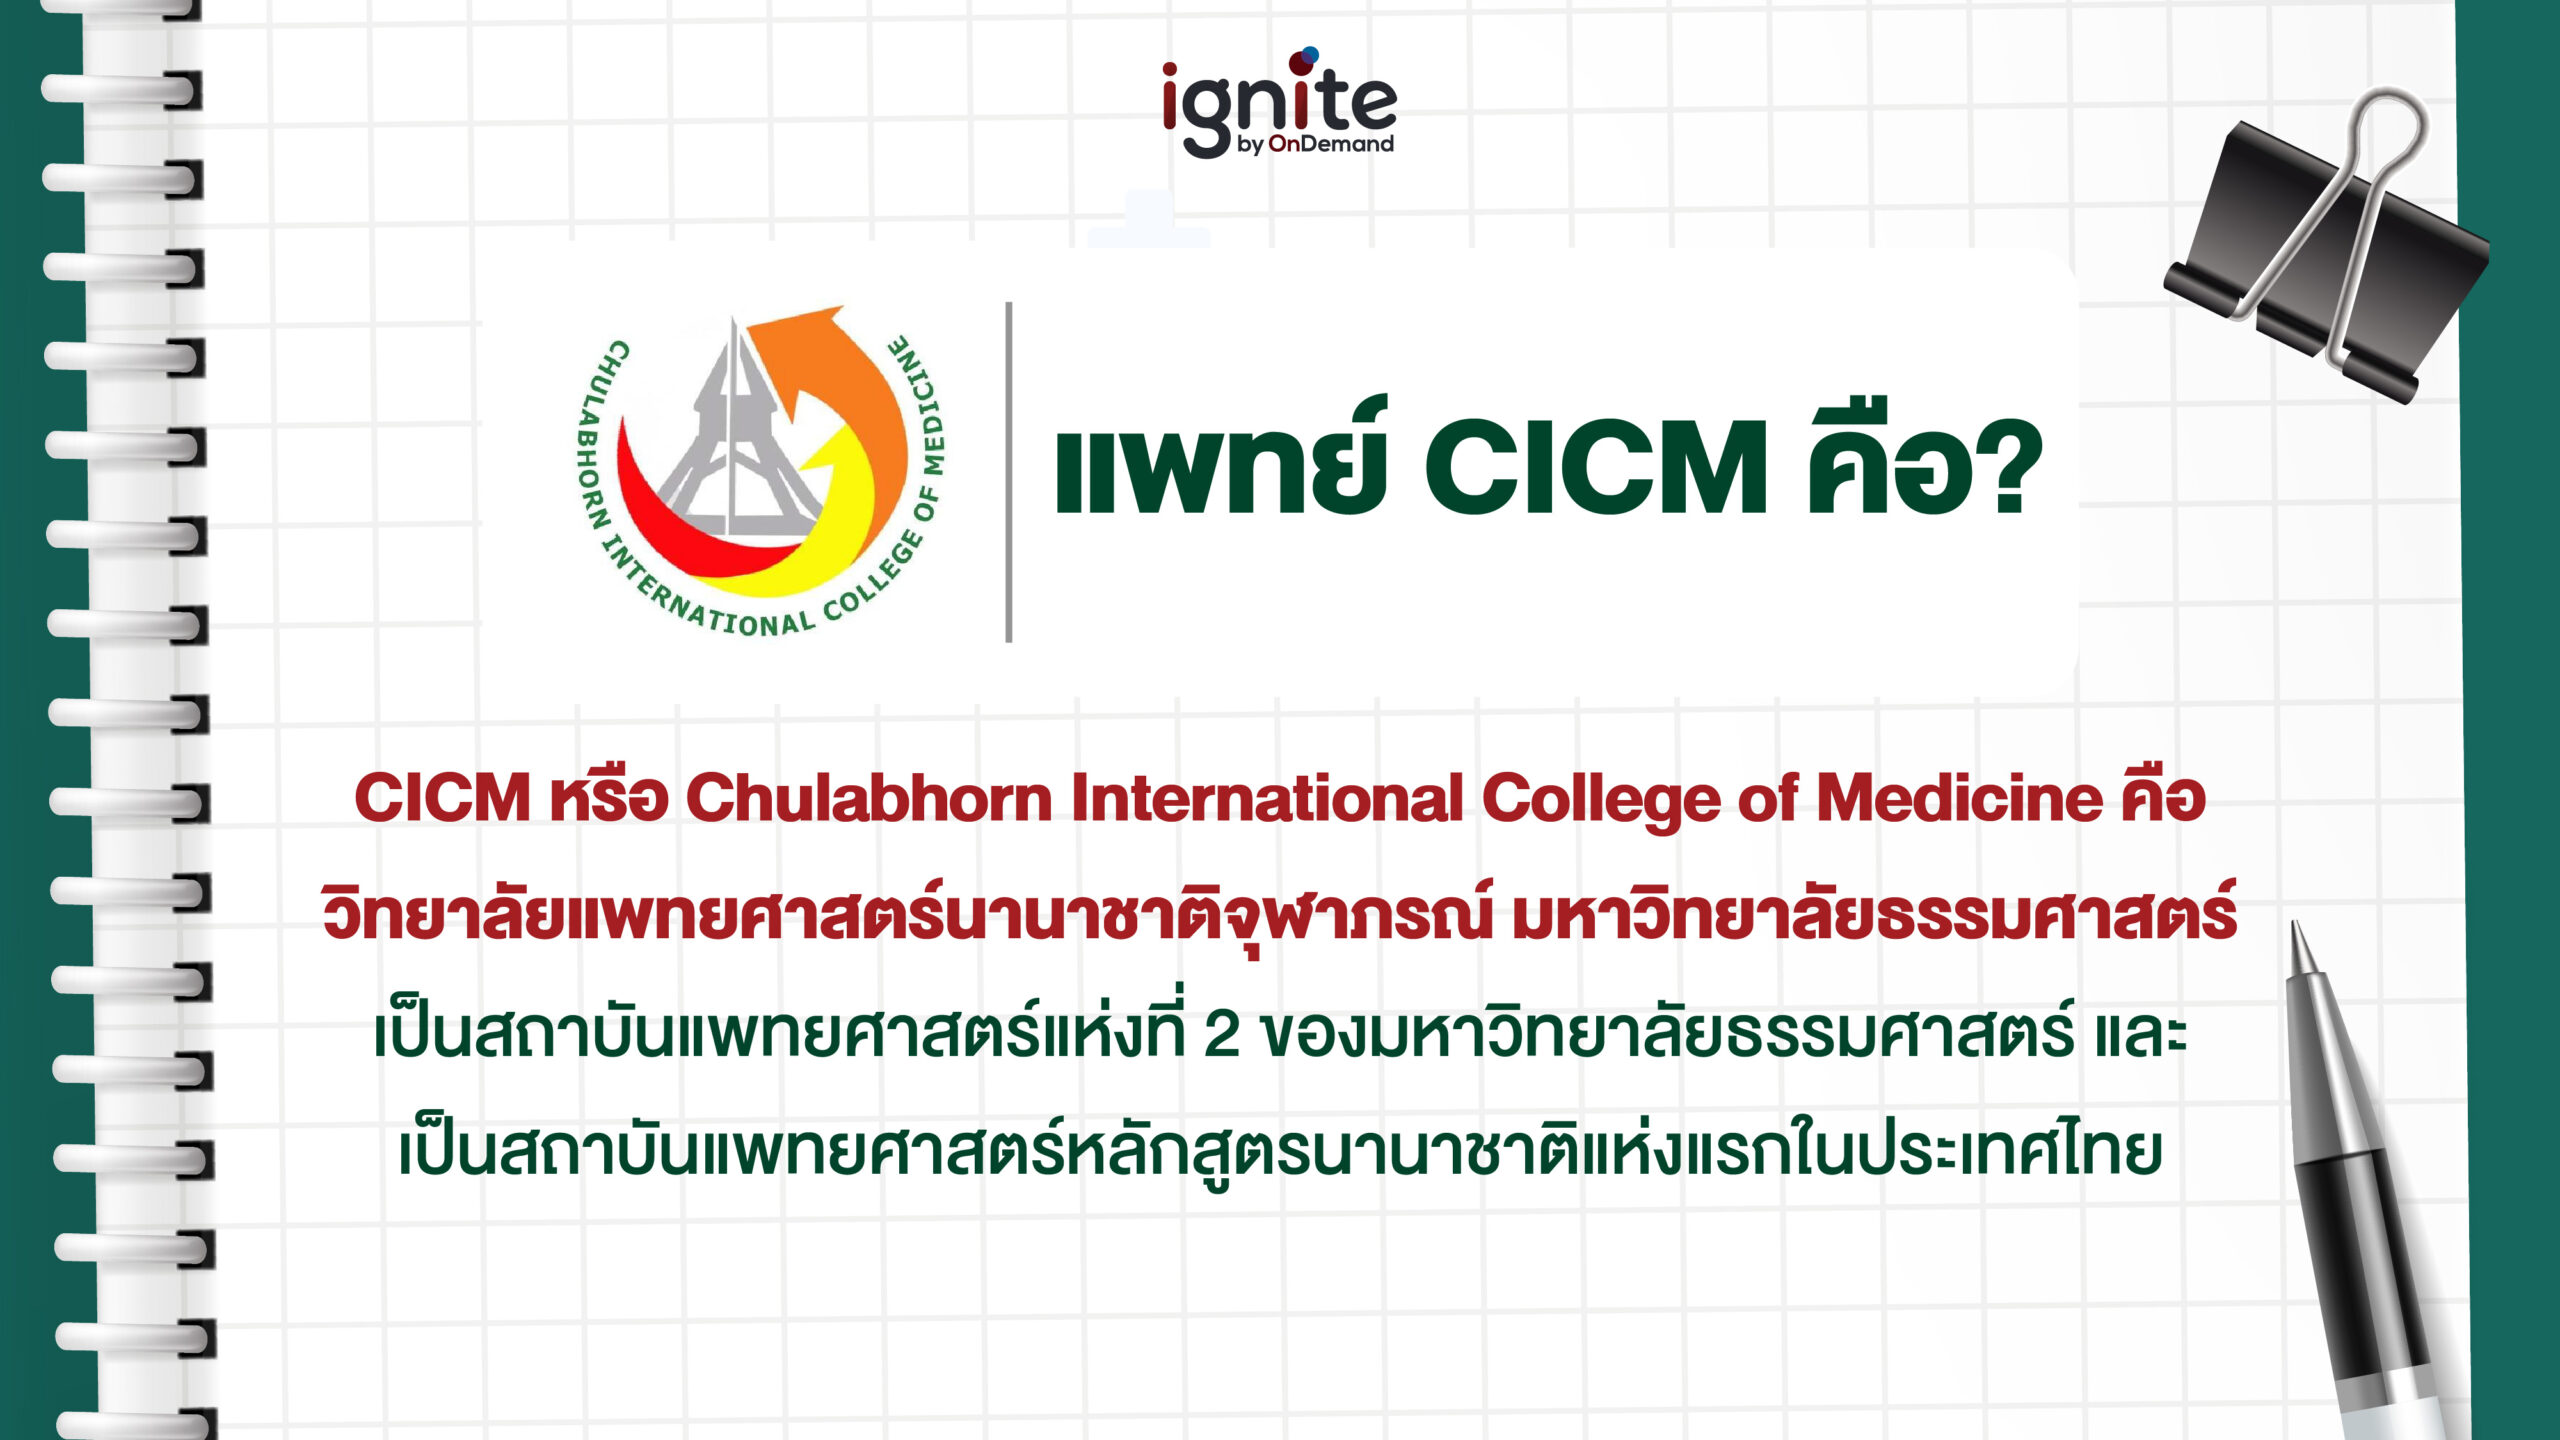 แพทย์ CICM คือ - ignite by ondemand - banner